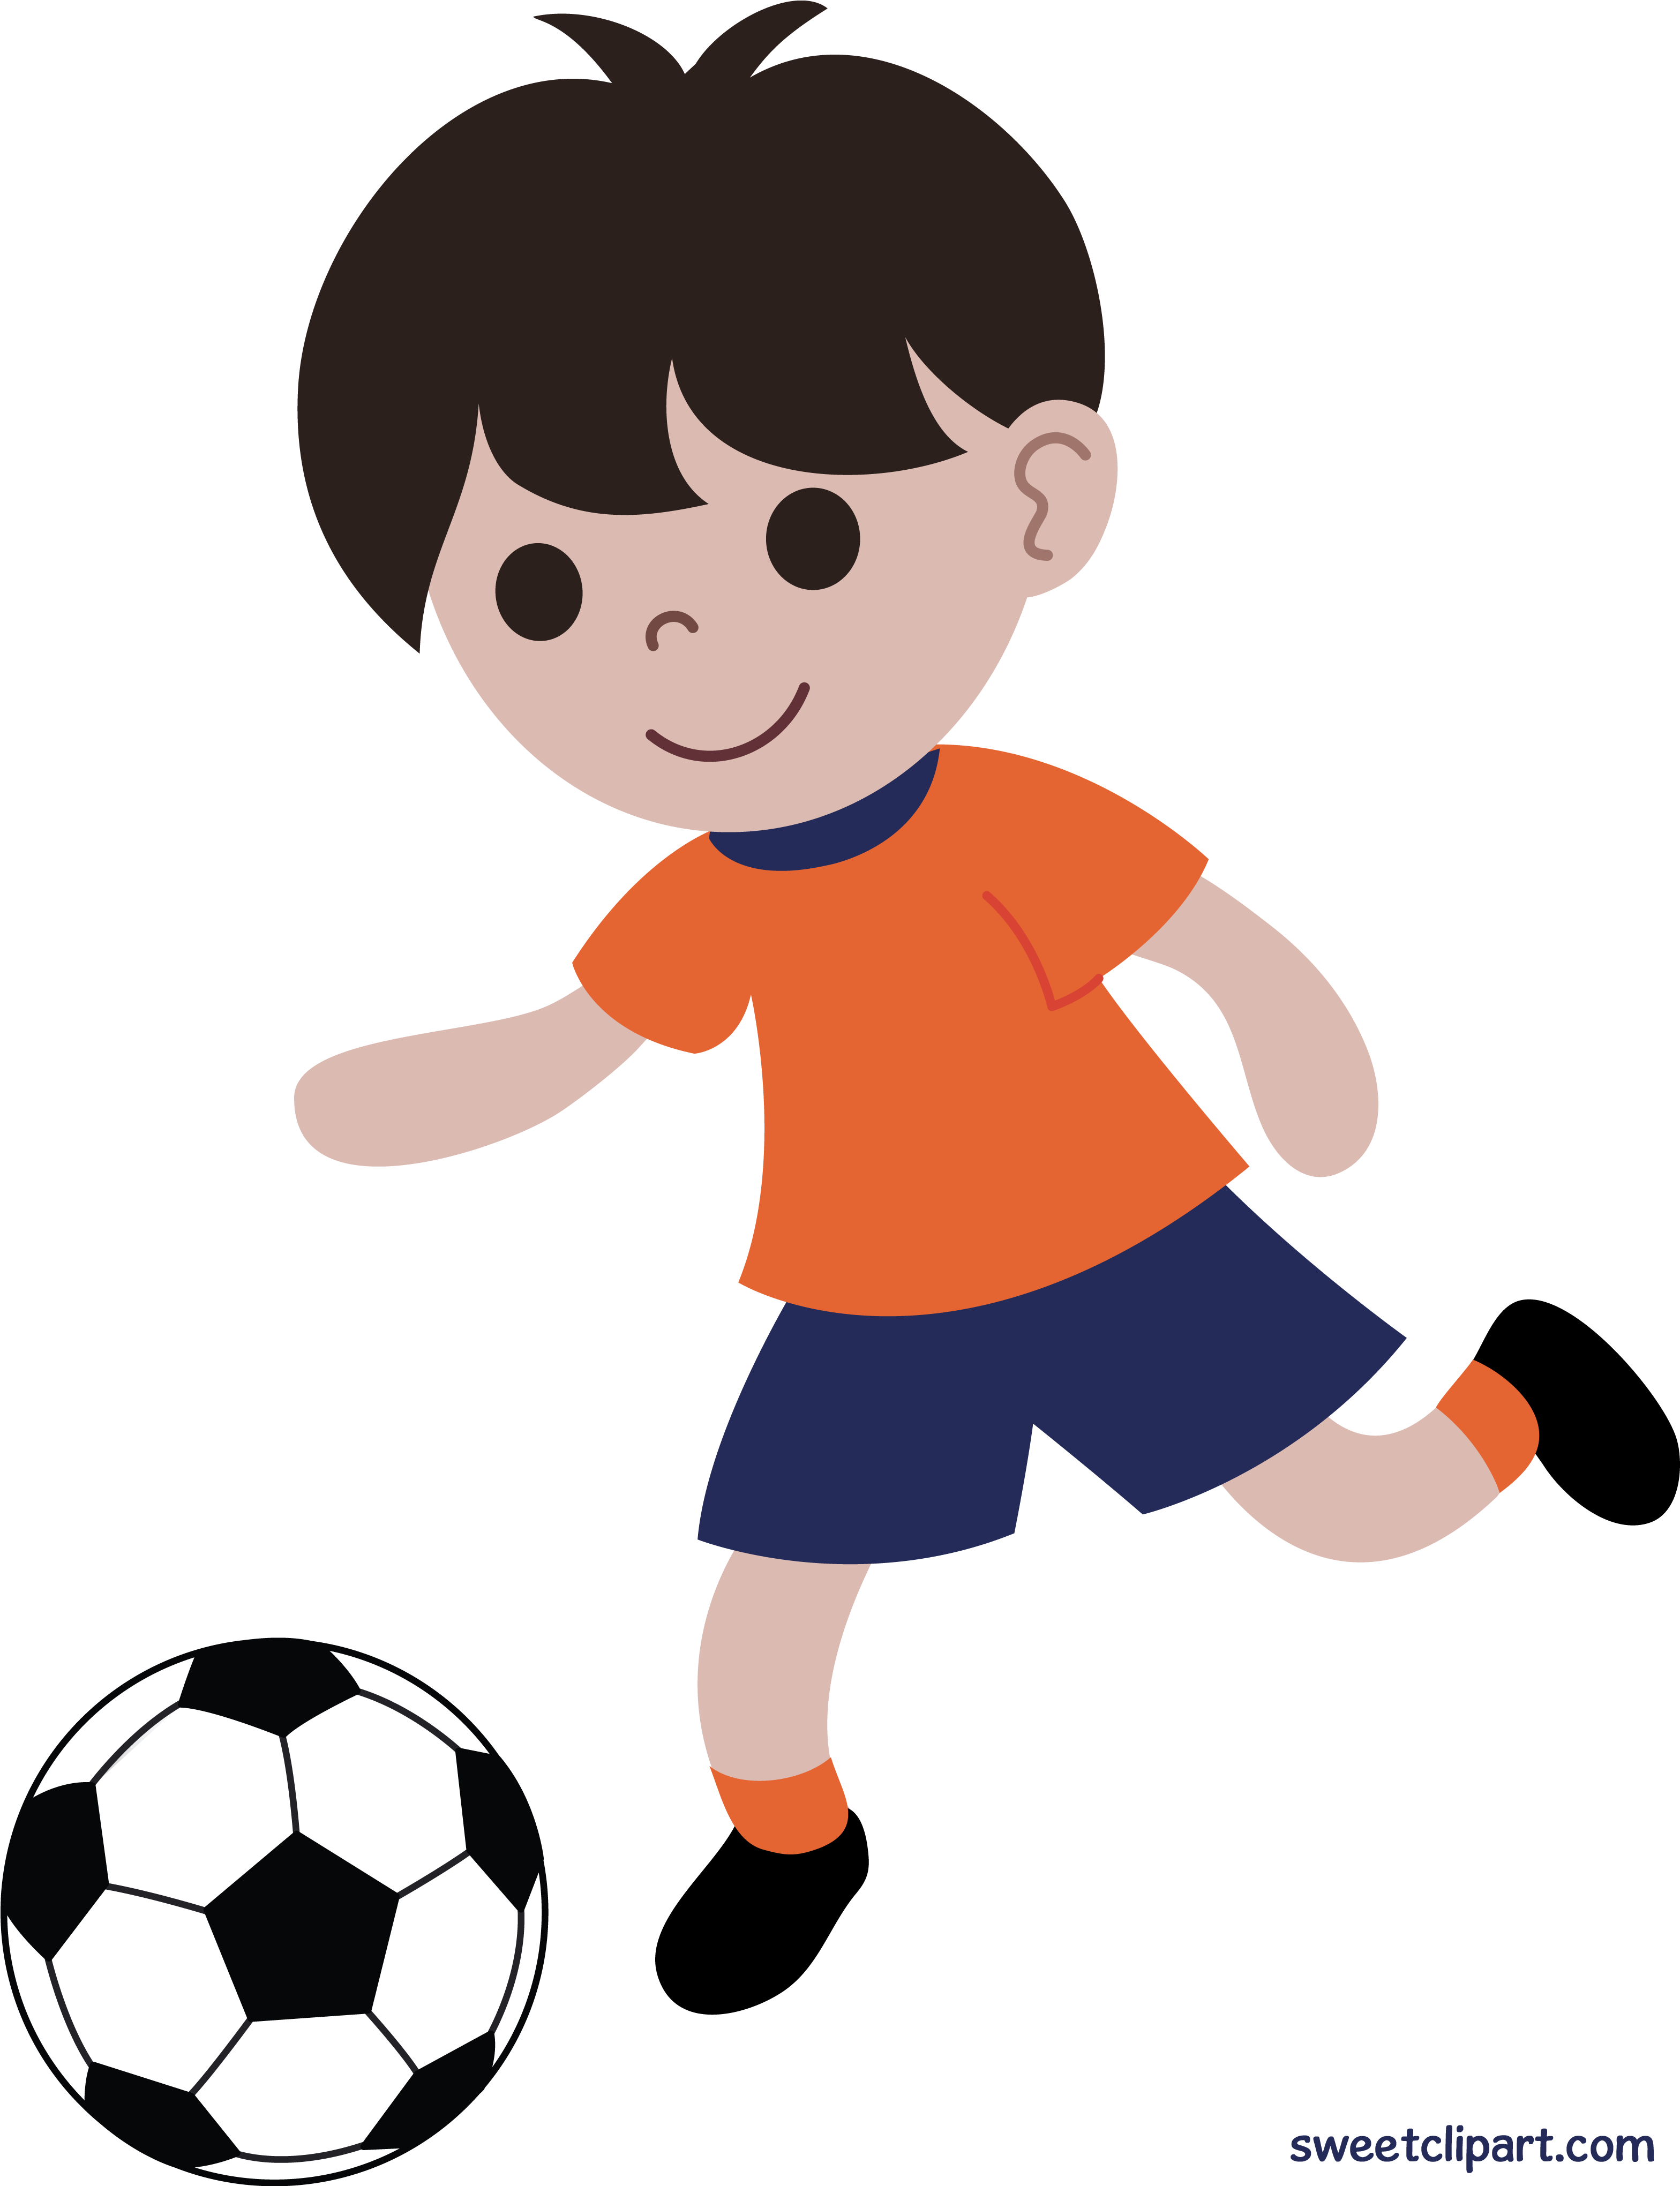 I play soccer. Мальчик с мячом. Мальчик играющий в мяч. Футбол мультяшный. Мальчик играет в футбол.